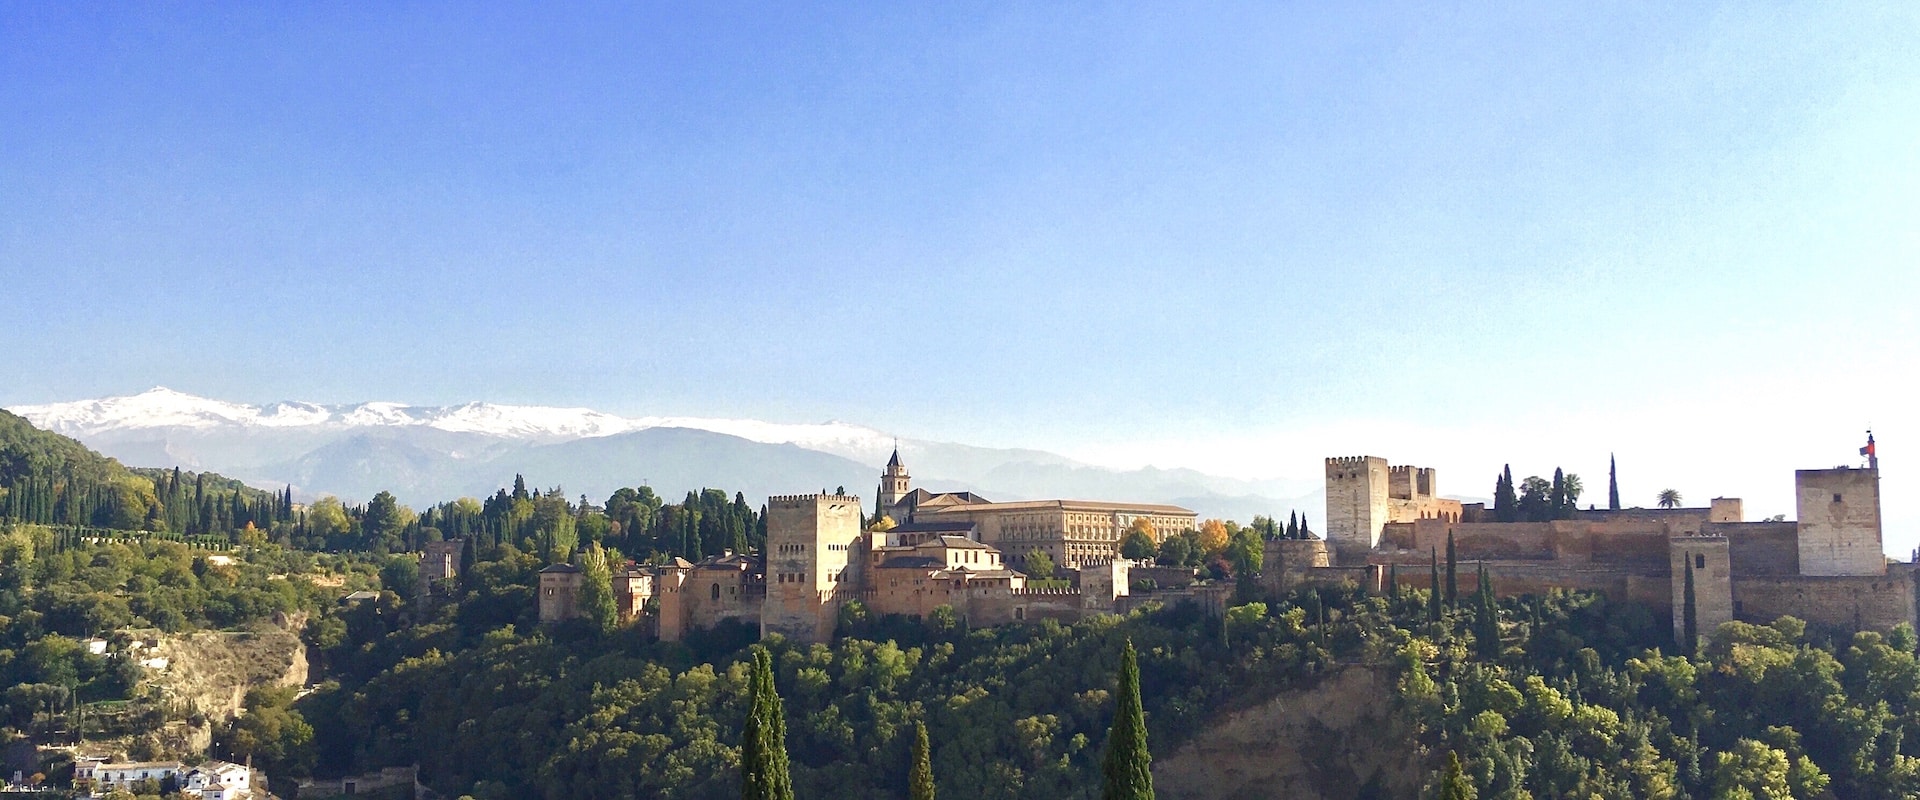 Vue sur l'Alhambra de Grenade avec les pics blancs de la Sierra Nevada en arrière-plan.